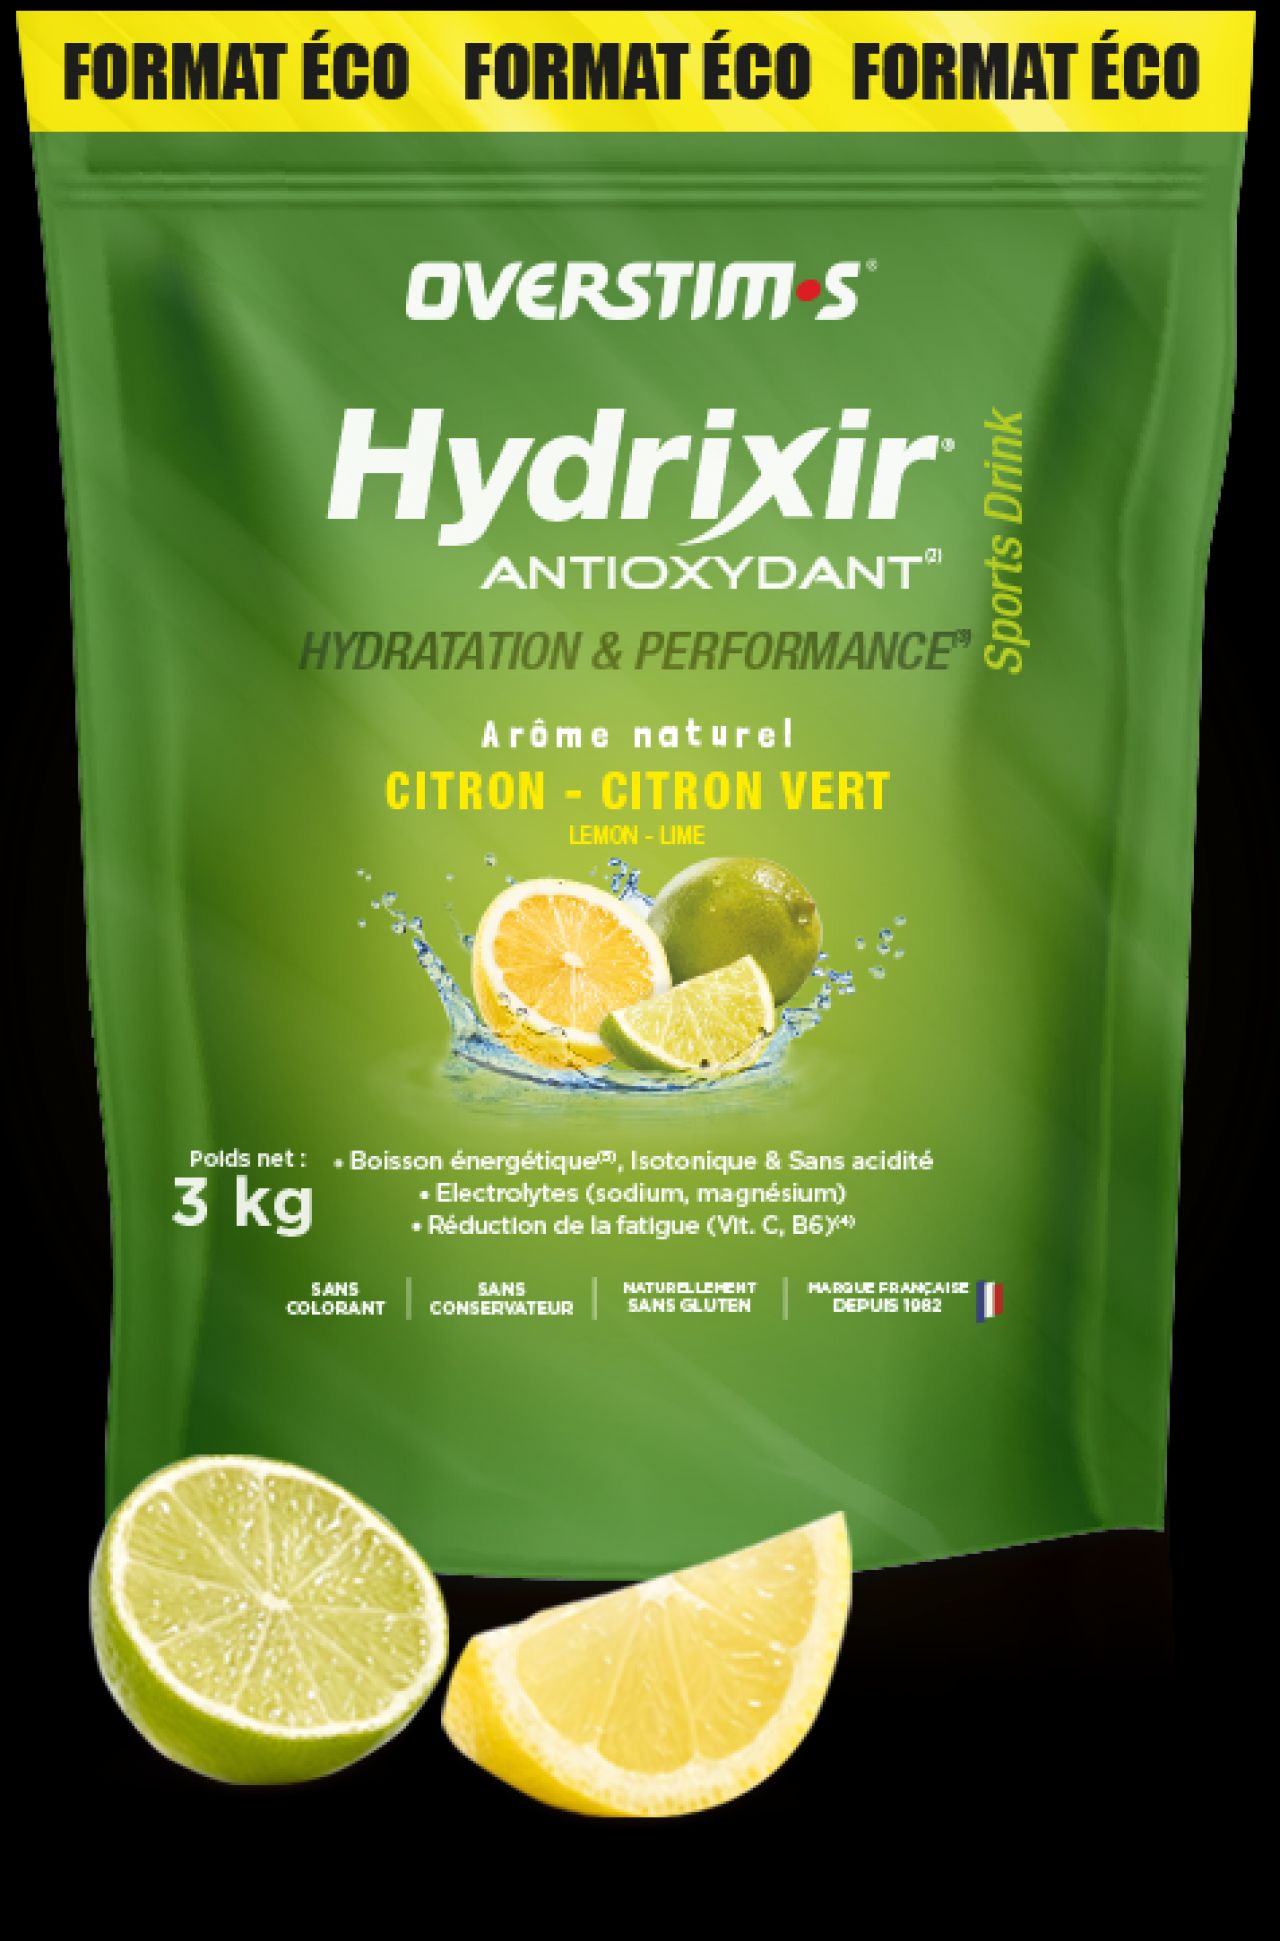 HYDRIXIR antioxyadant CITRON CITRON VERT 3KG FORMAT ECO